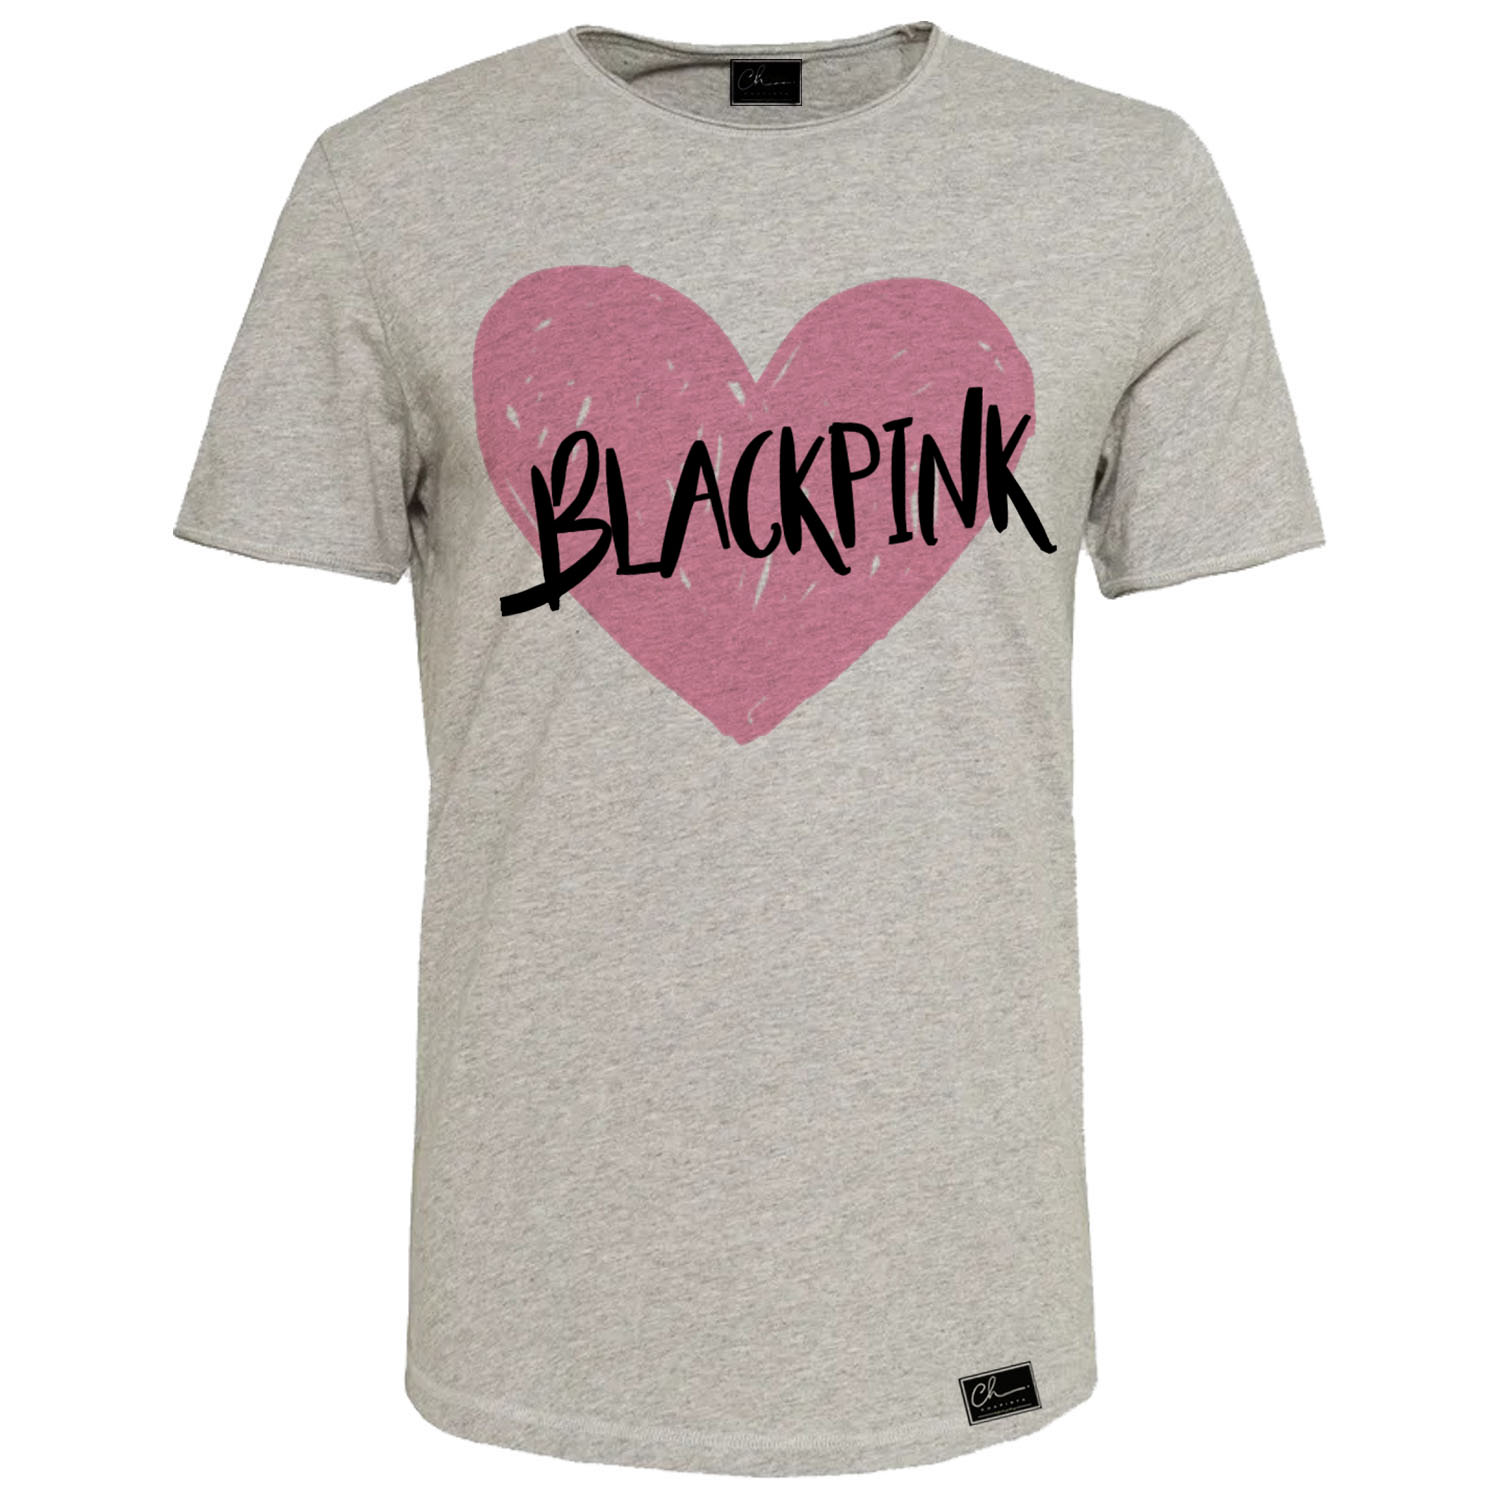 تی شرت زنانه مدل blackpink کد ZJ13 رنگ طوسی